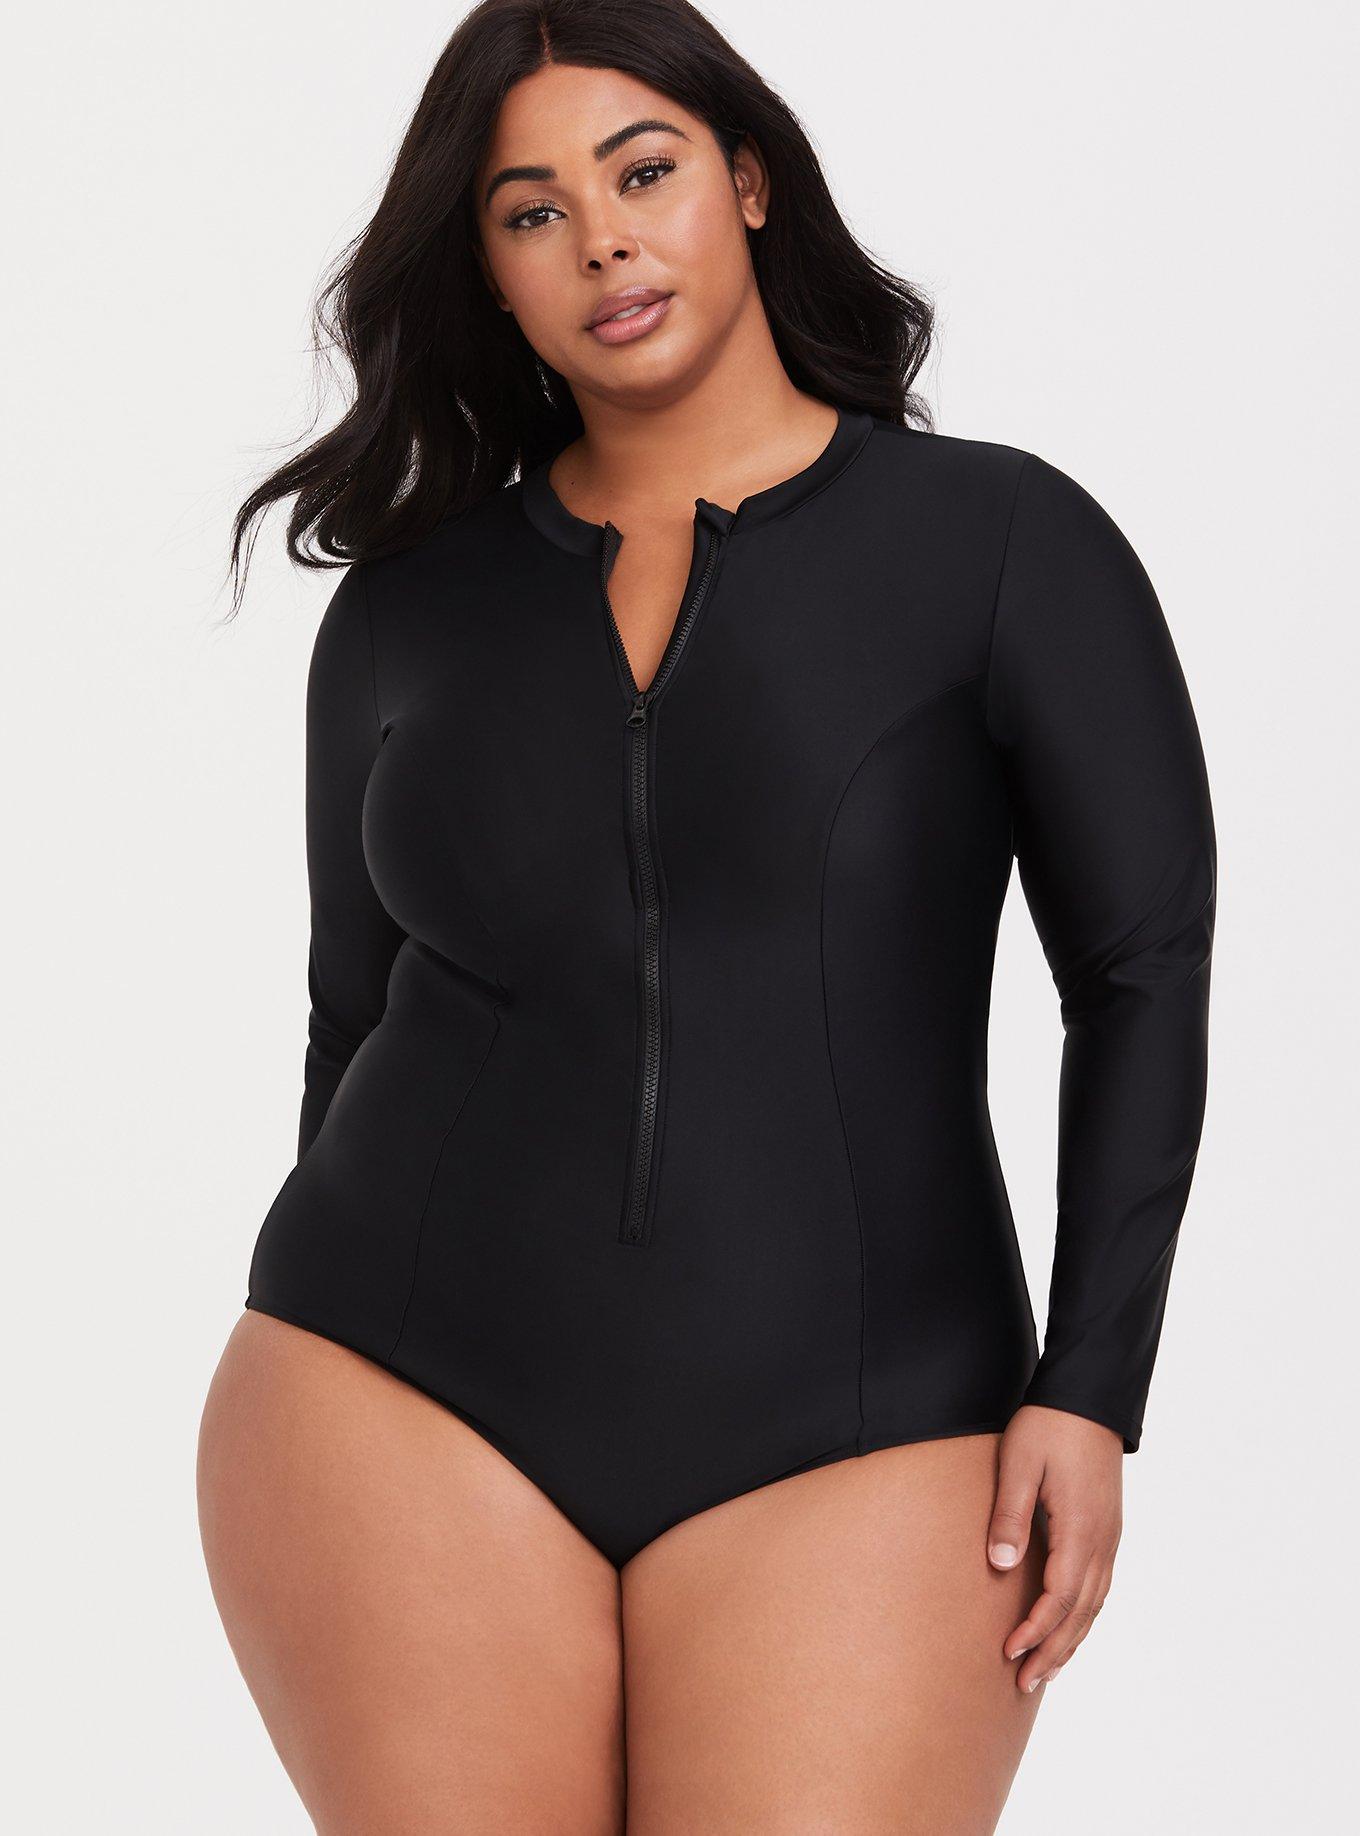 Plus Size Swimsuits Sleeves  Plus Size Swimwear Women Black